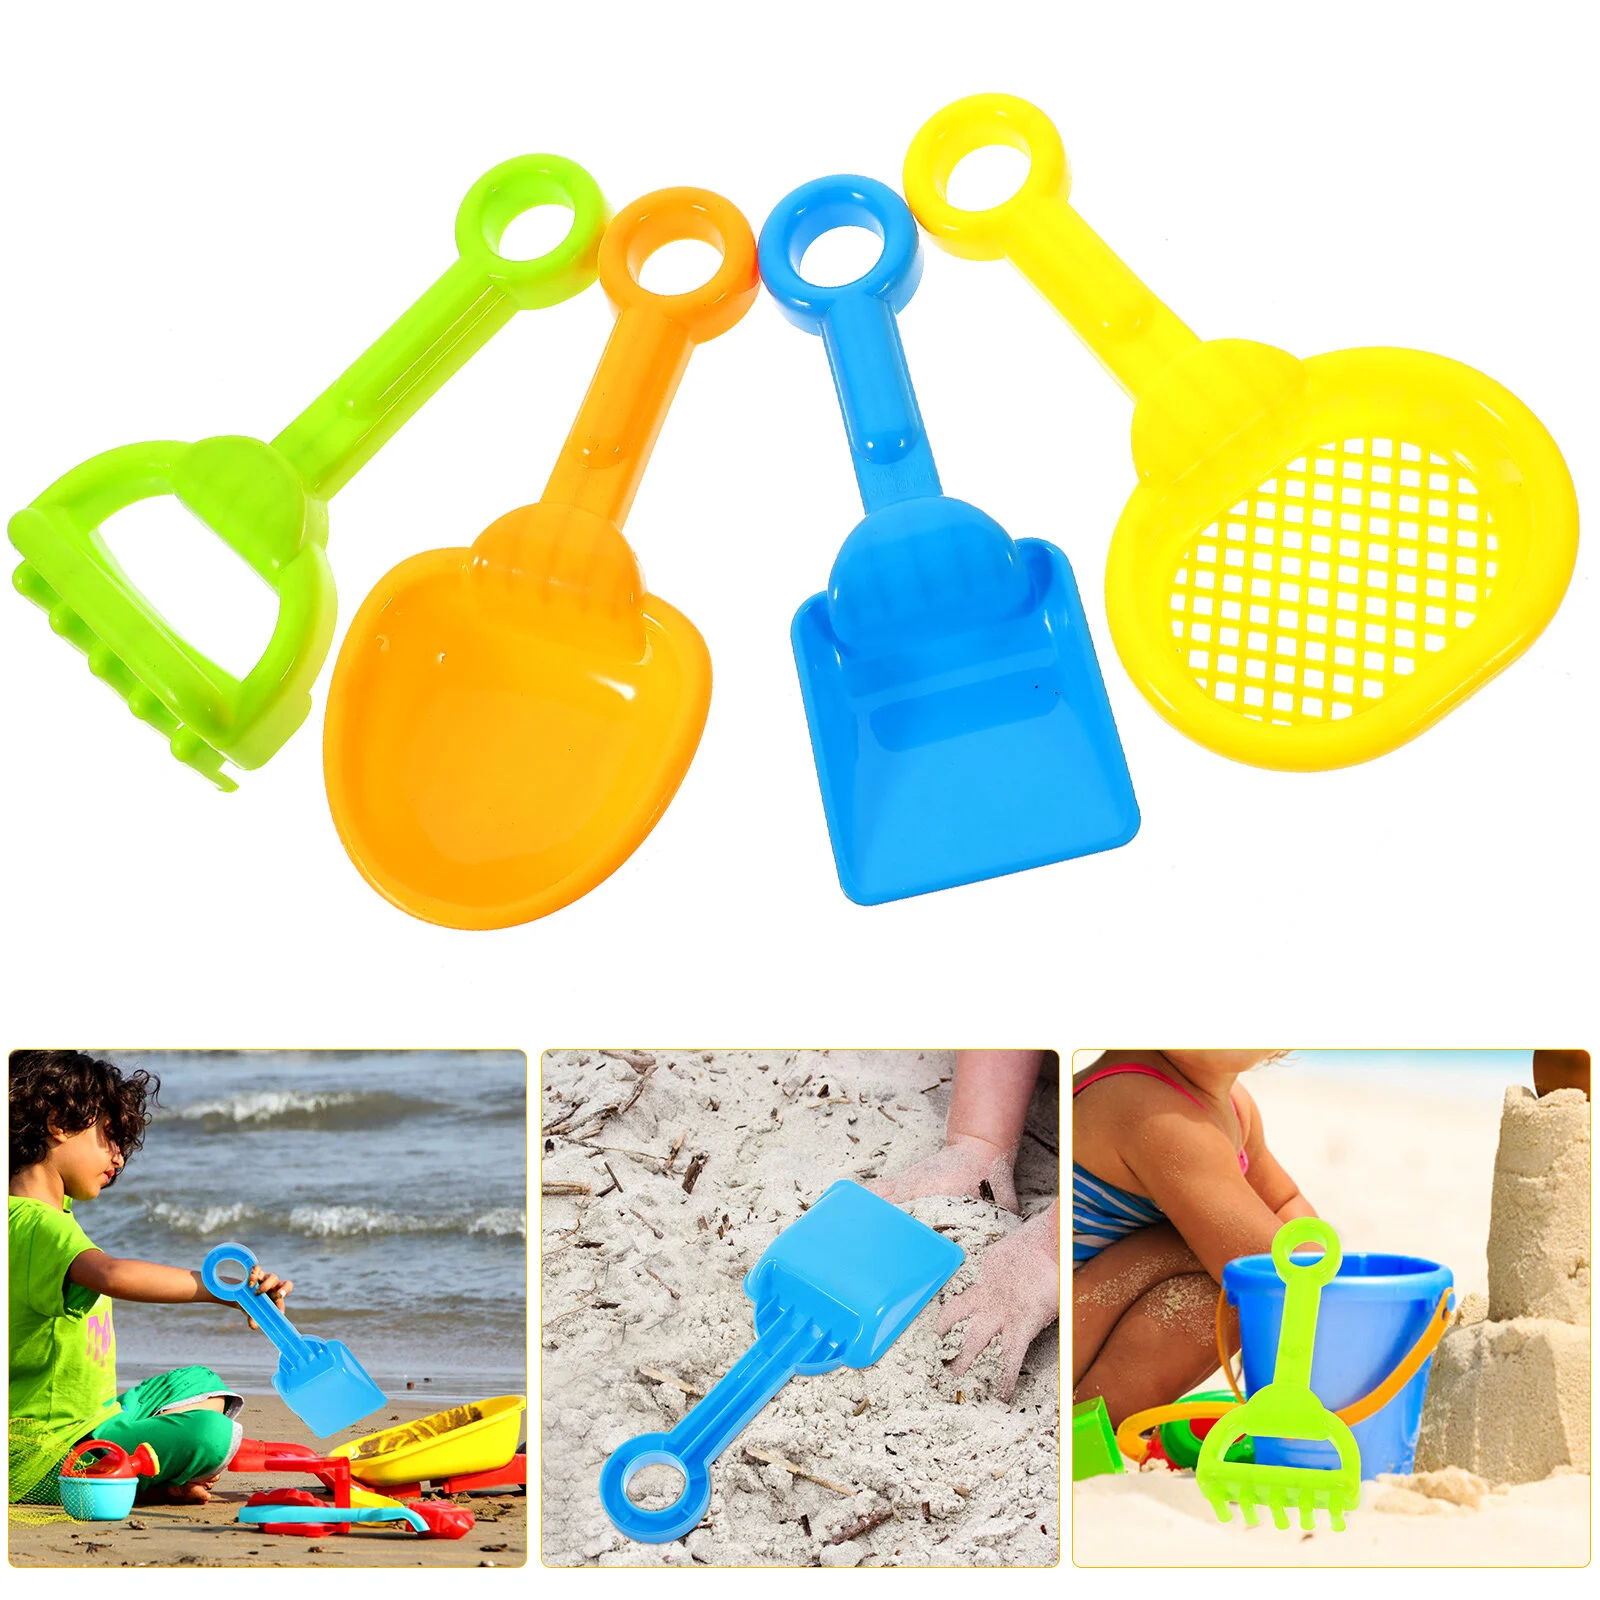 

8 шт., детские пластиковые лопаты для пляжа